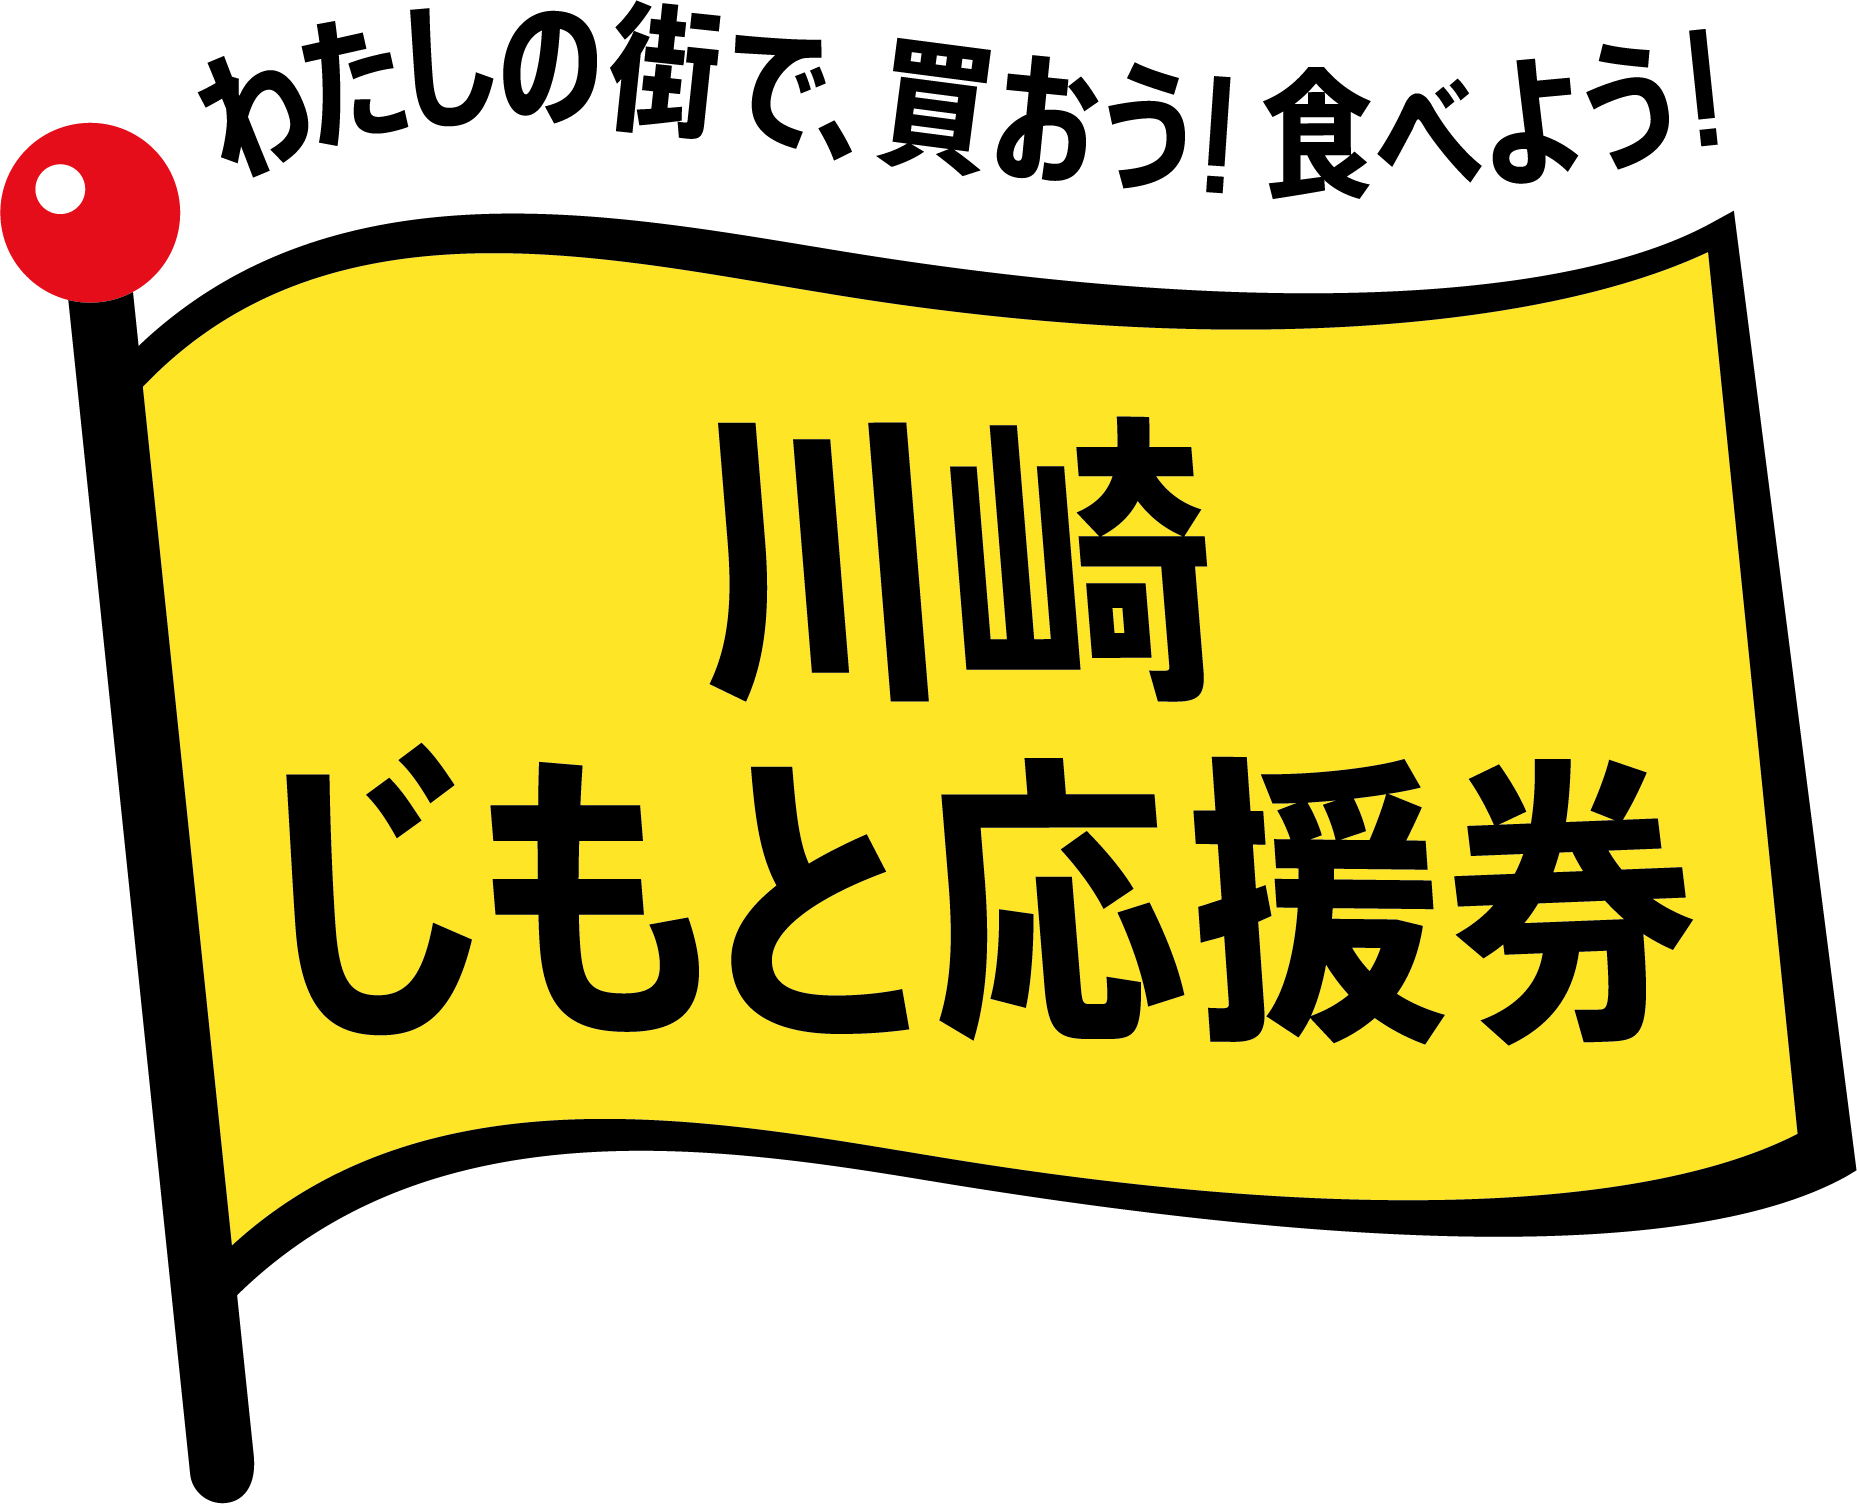 川崎じもと応援券ロゴ(旗)